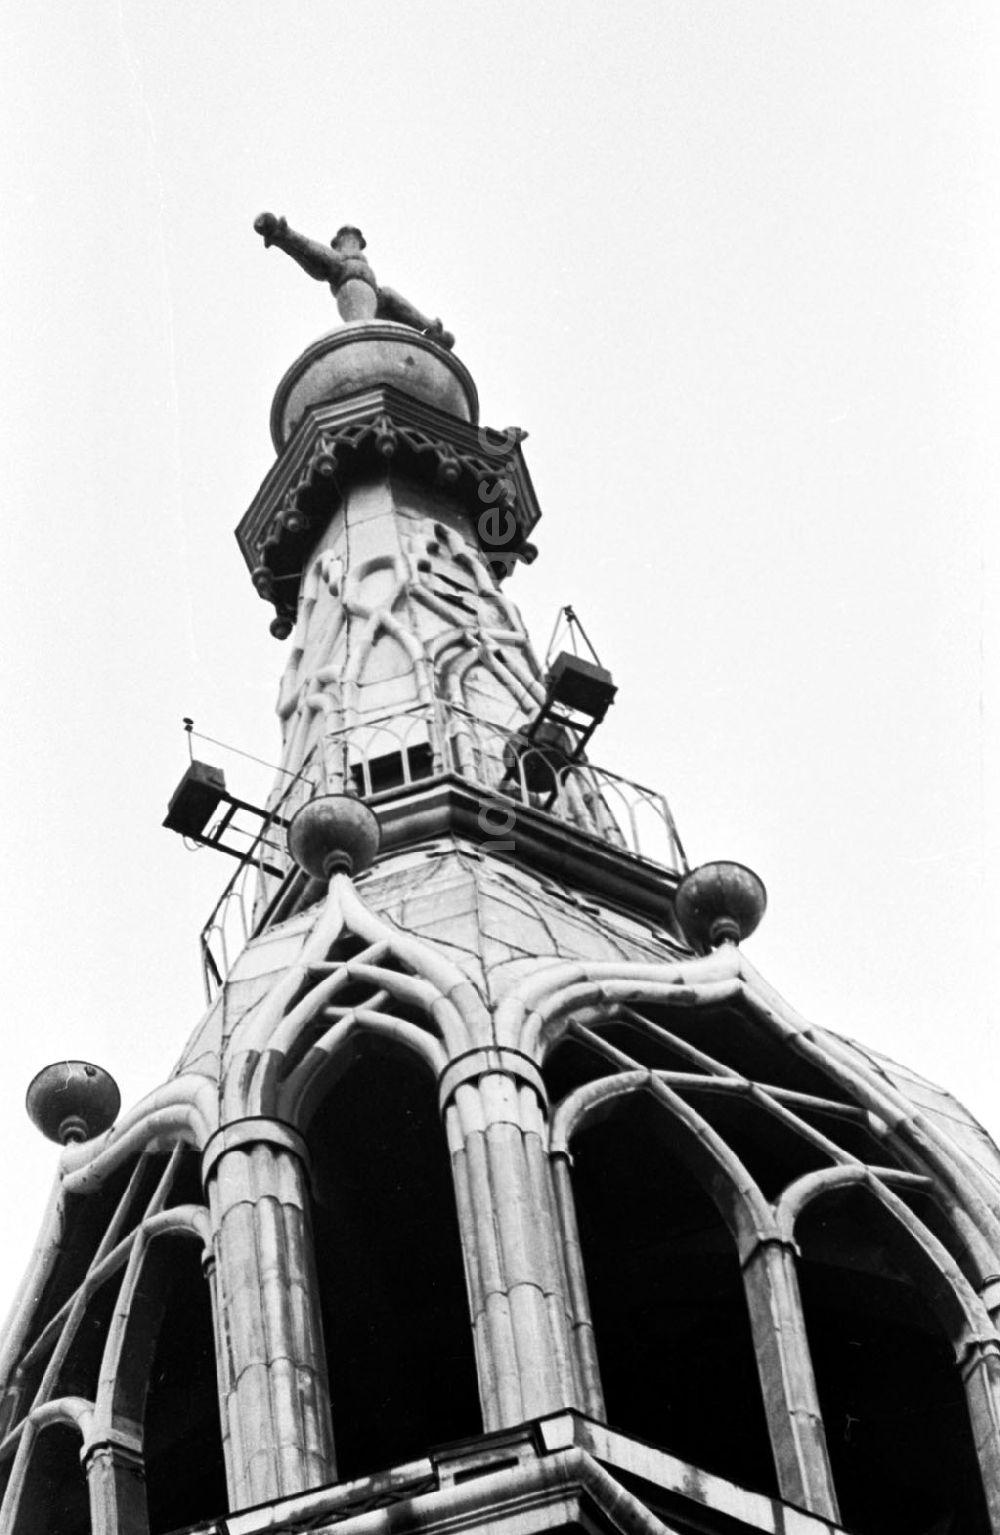 GDR photo archive: Berlin-Mitte - Einsetzen von Jungfalken im Turm der Marienkirche durch Greifvogelschutz beim Magistrat von Berlin 21.